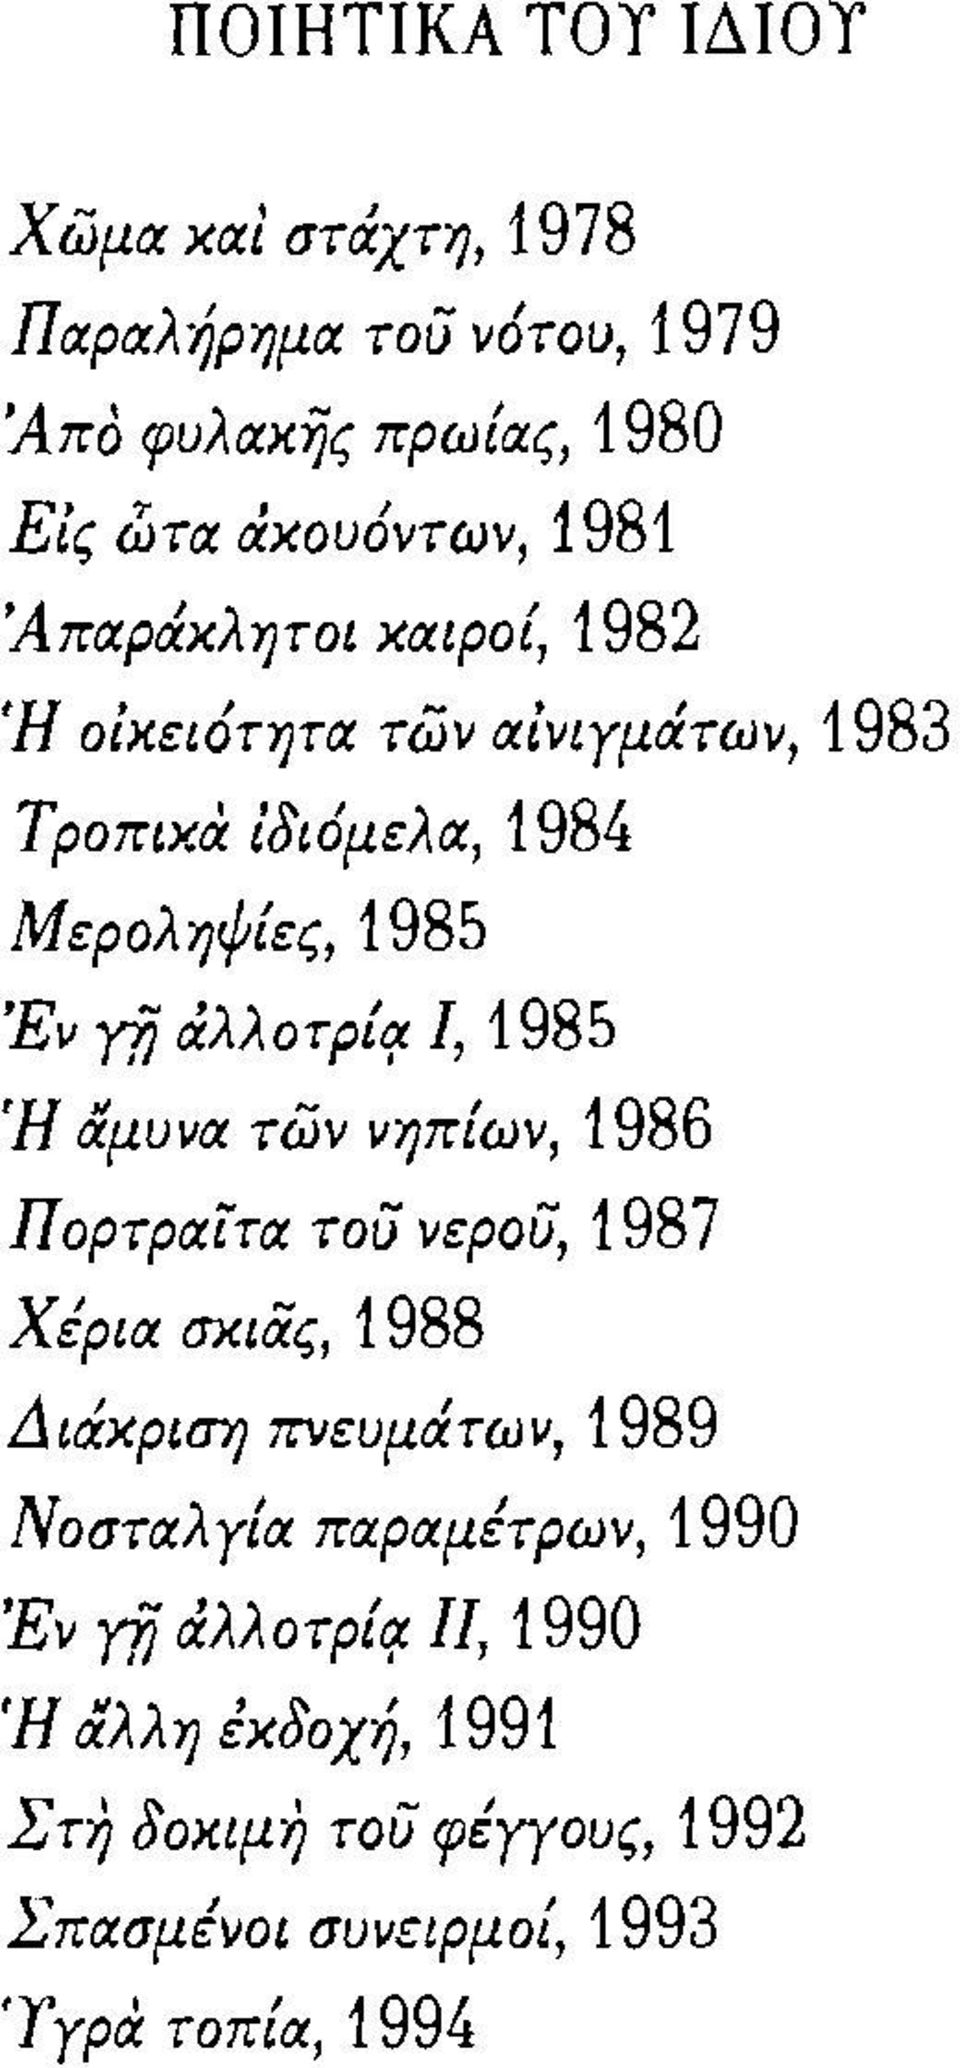 των, 1983 τροπικα ίδιόμελα, 1984 Μεροληψίες, 1985 'Εν γfj άλλοτρ{rr.